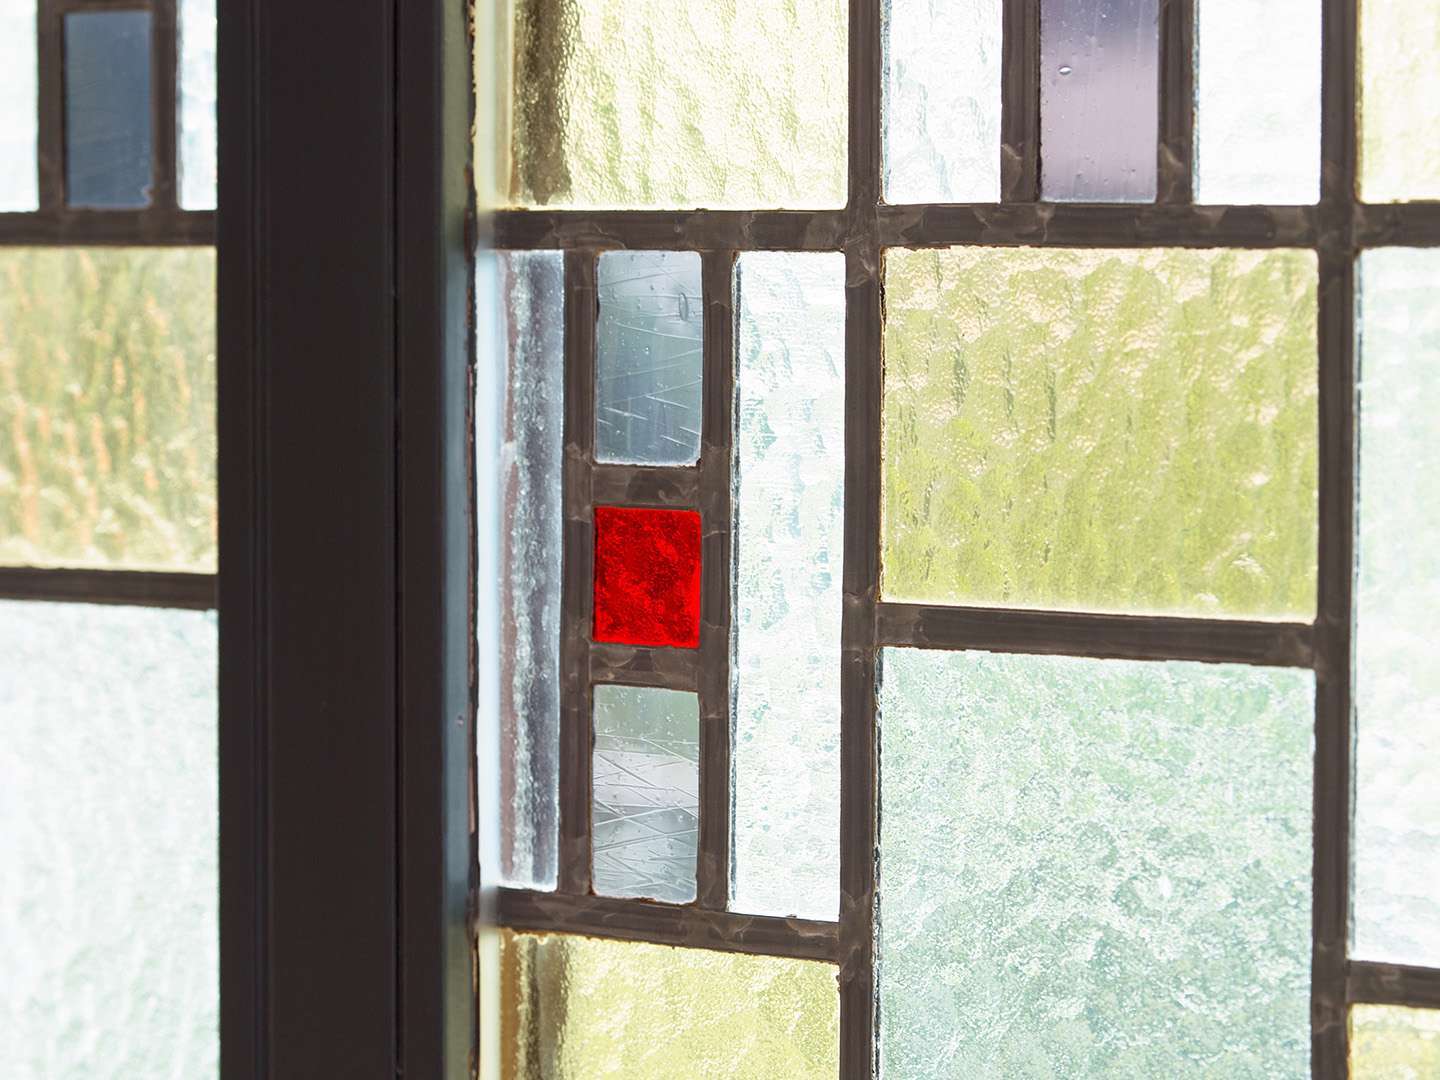 Detailansicht eines Buntglasfensters